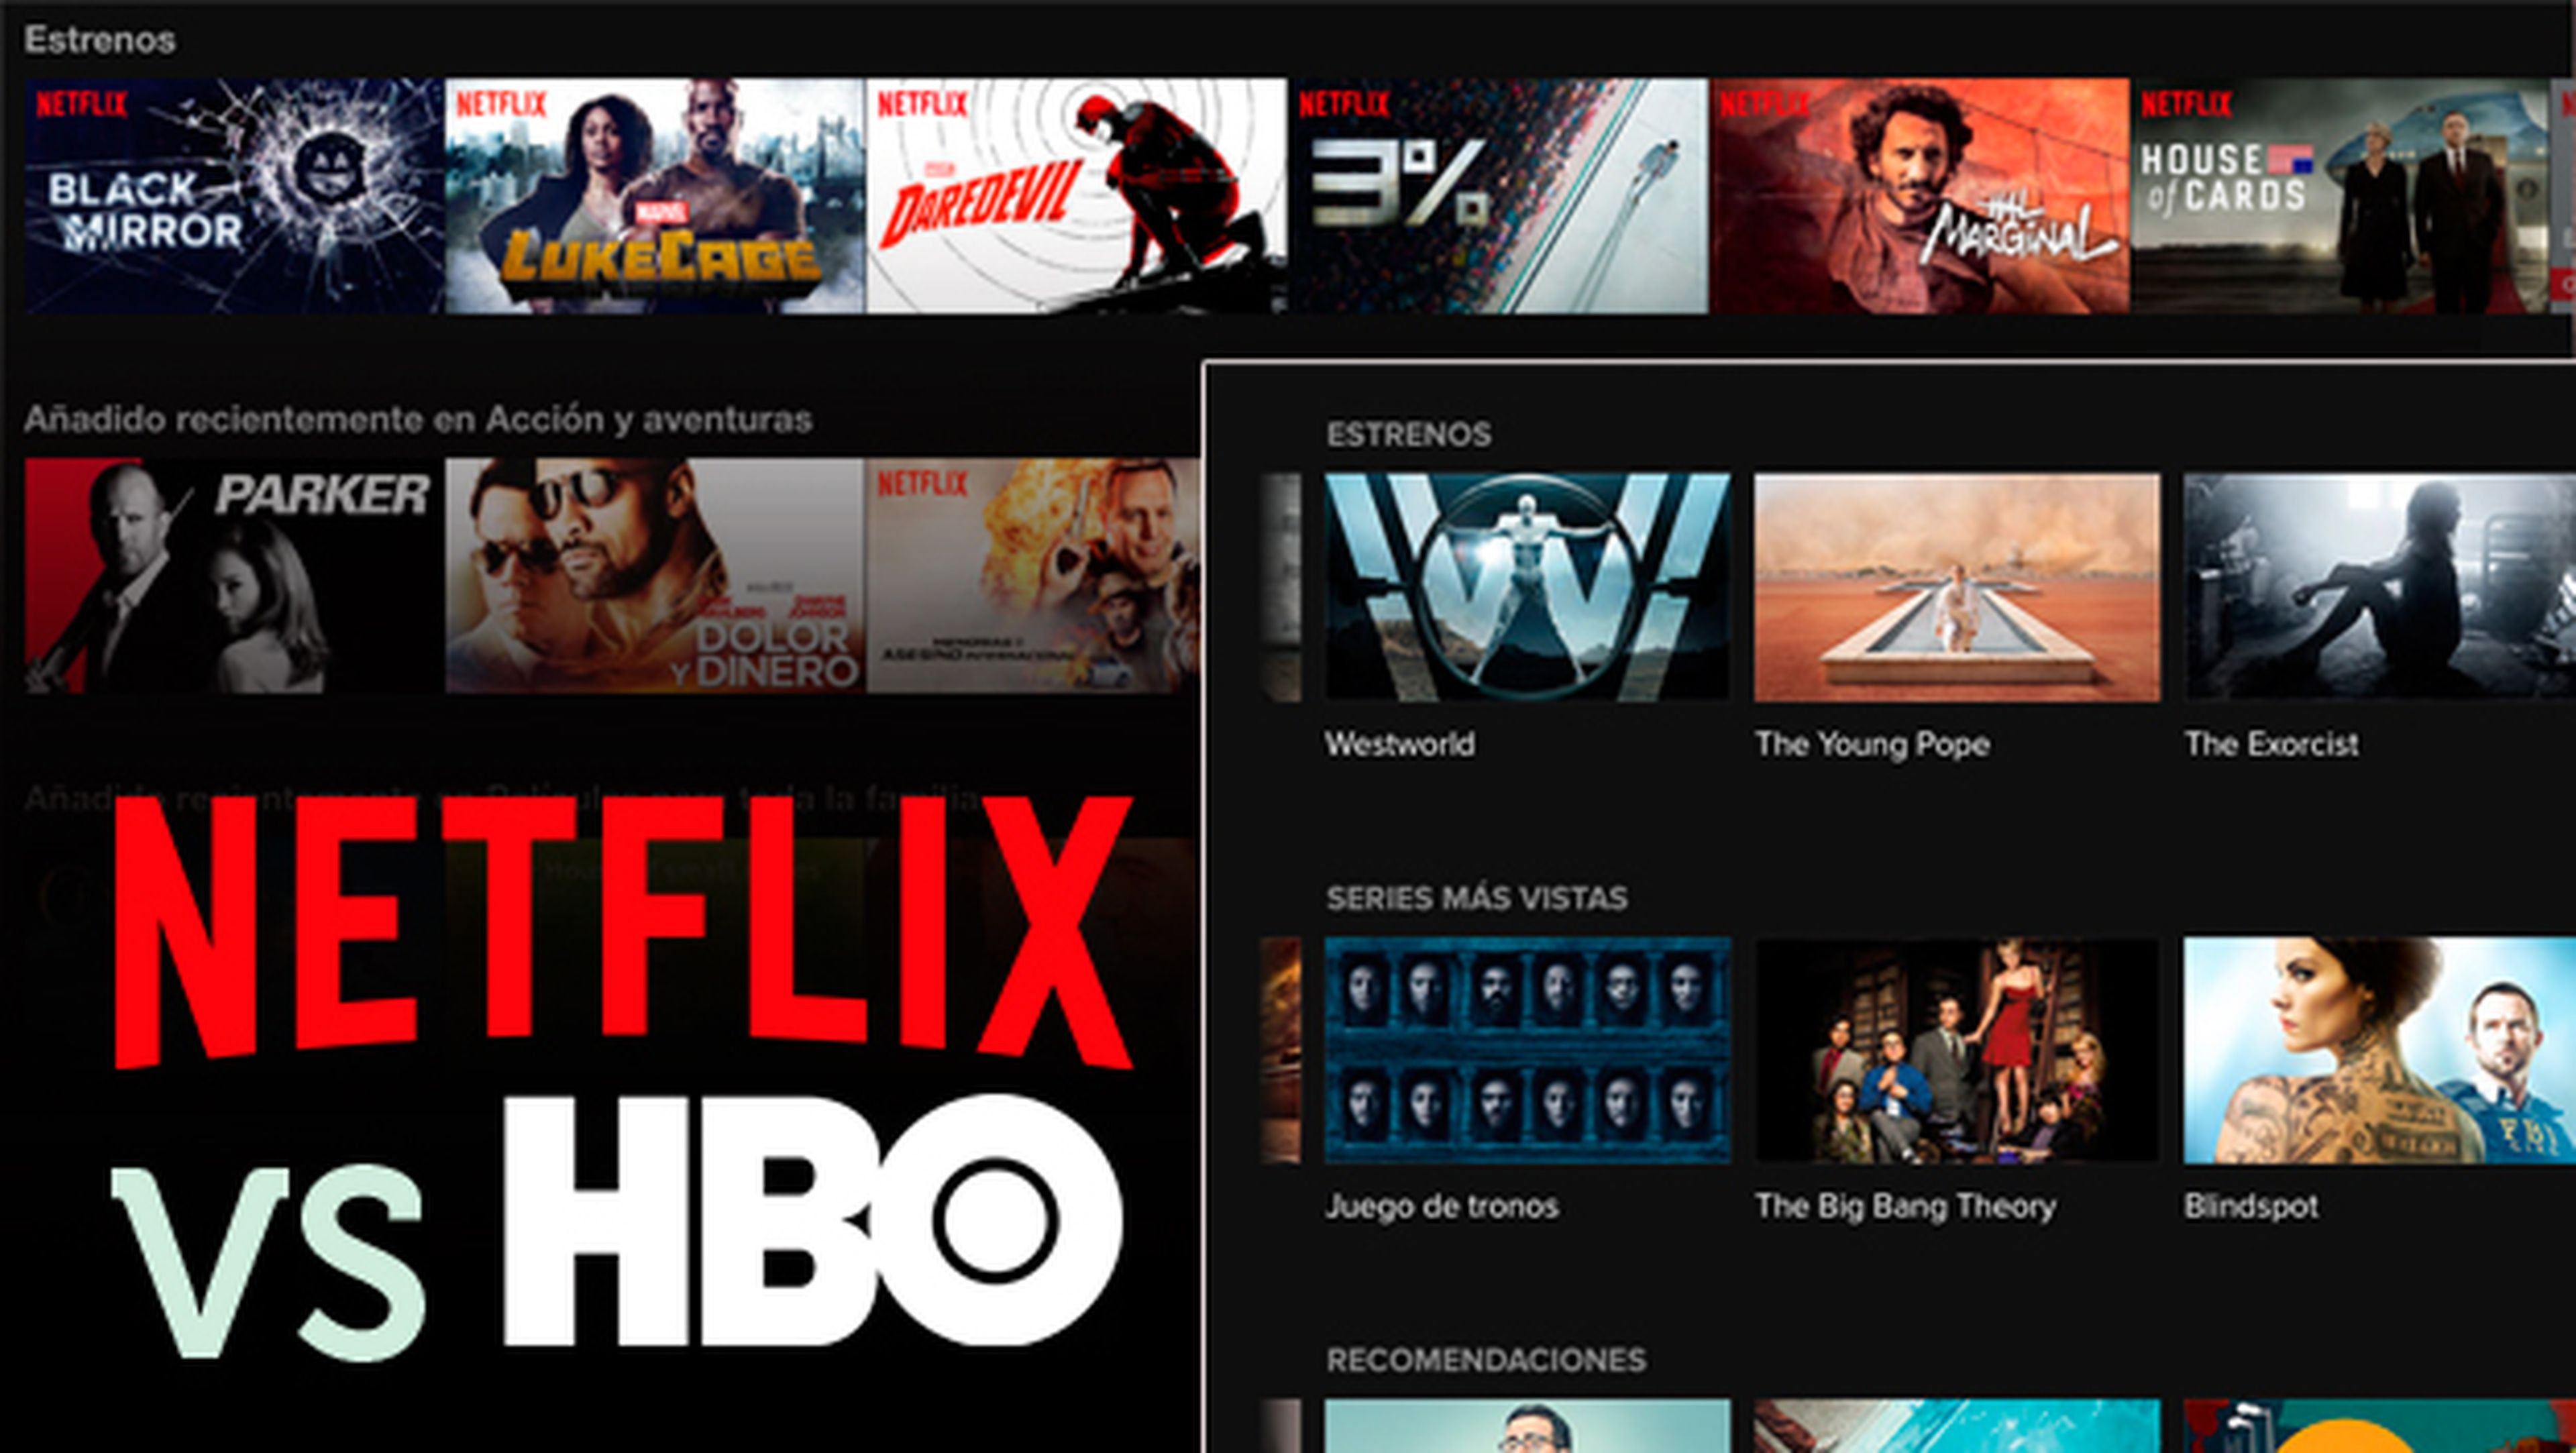 HBO vs Netflix catálogo